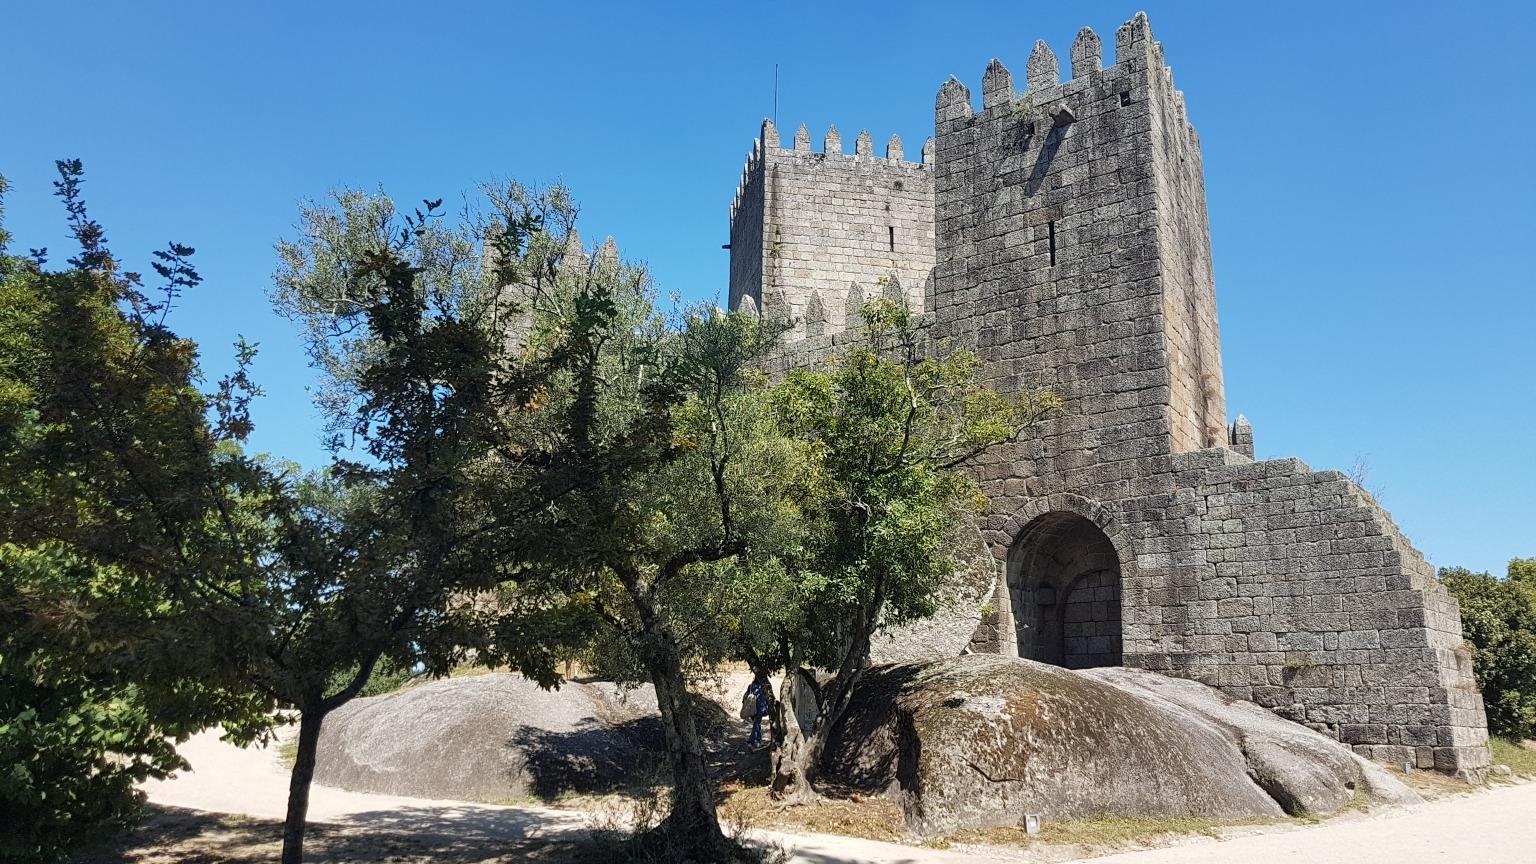 Construido en el siglo X, el Castillo de Guimarães es el principal monumento medieval de esta ciudad histórica declarada Patrimonio de la Humanidad por la UNESCO.